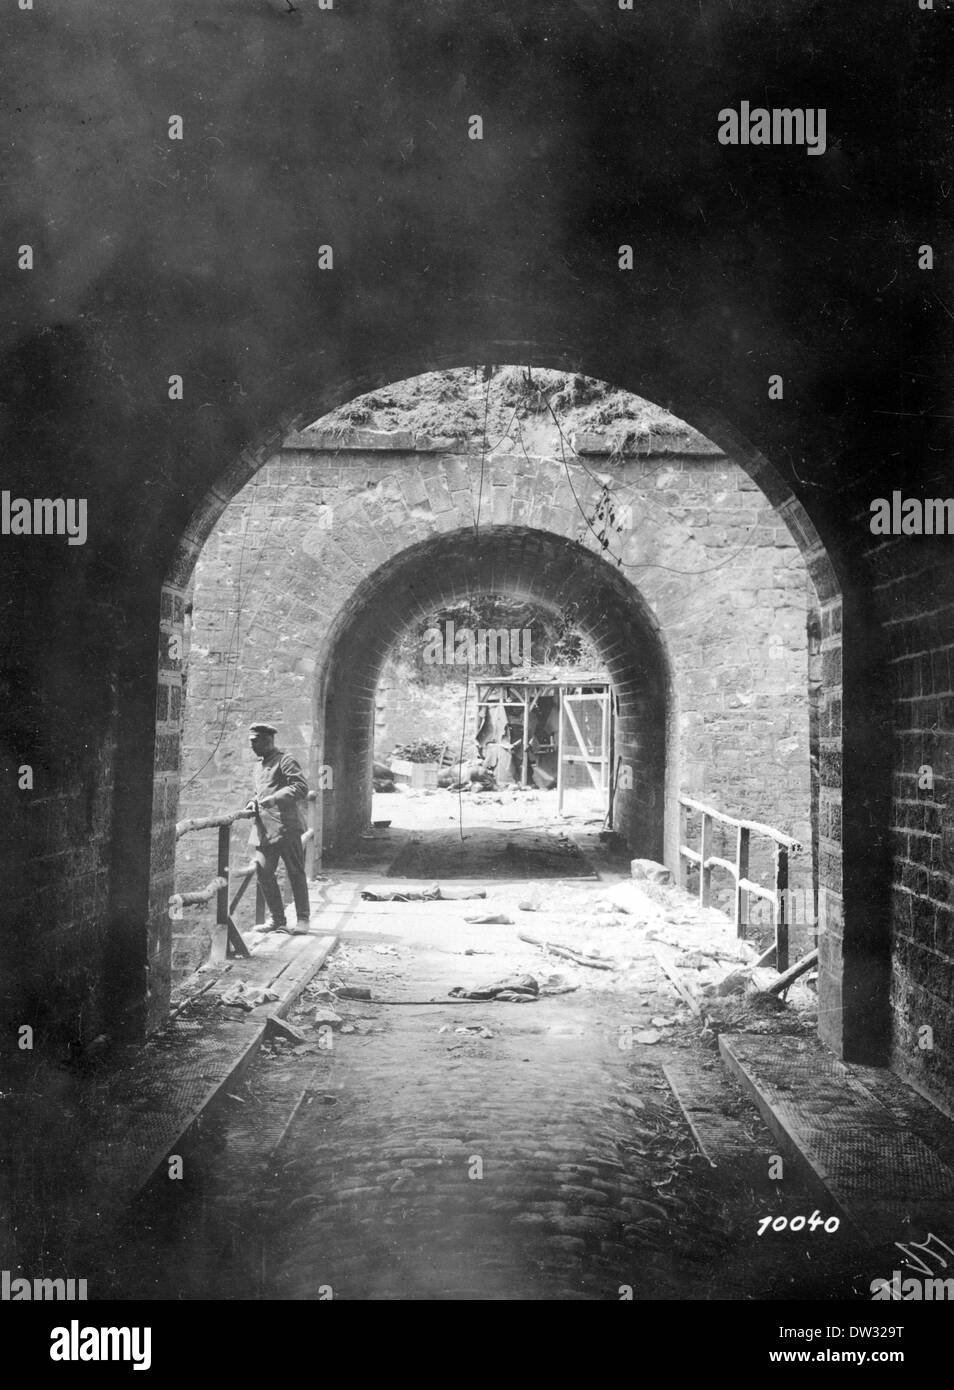 Das zerstörte Fort de Conde an der Westfront im Ersten Weltkrieg bei Soissons, Frankreich, 1918. Fotoarchiv für Zeitgeschichte - KEIN KABELDIENST Stockfoto